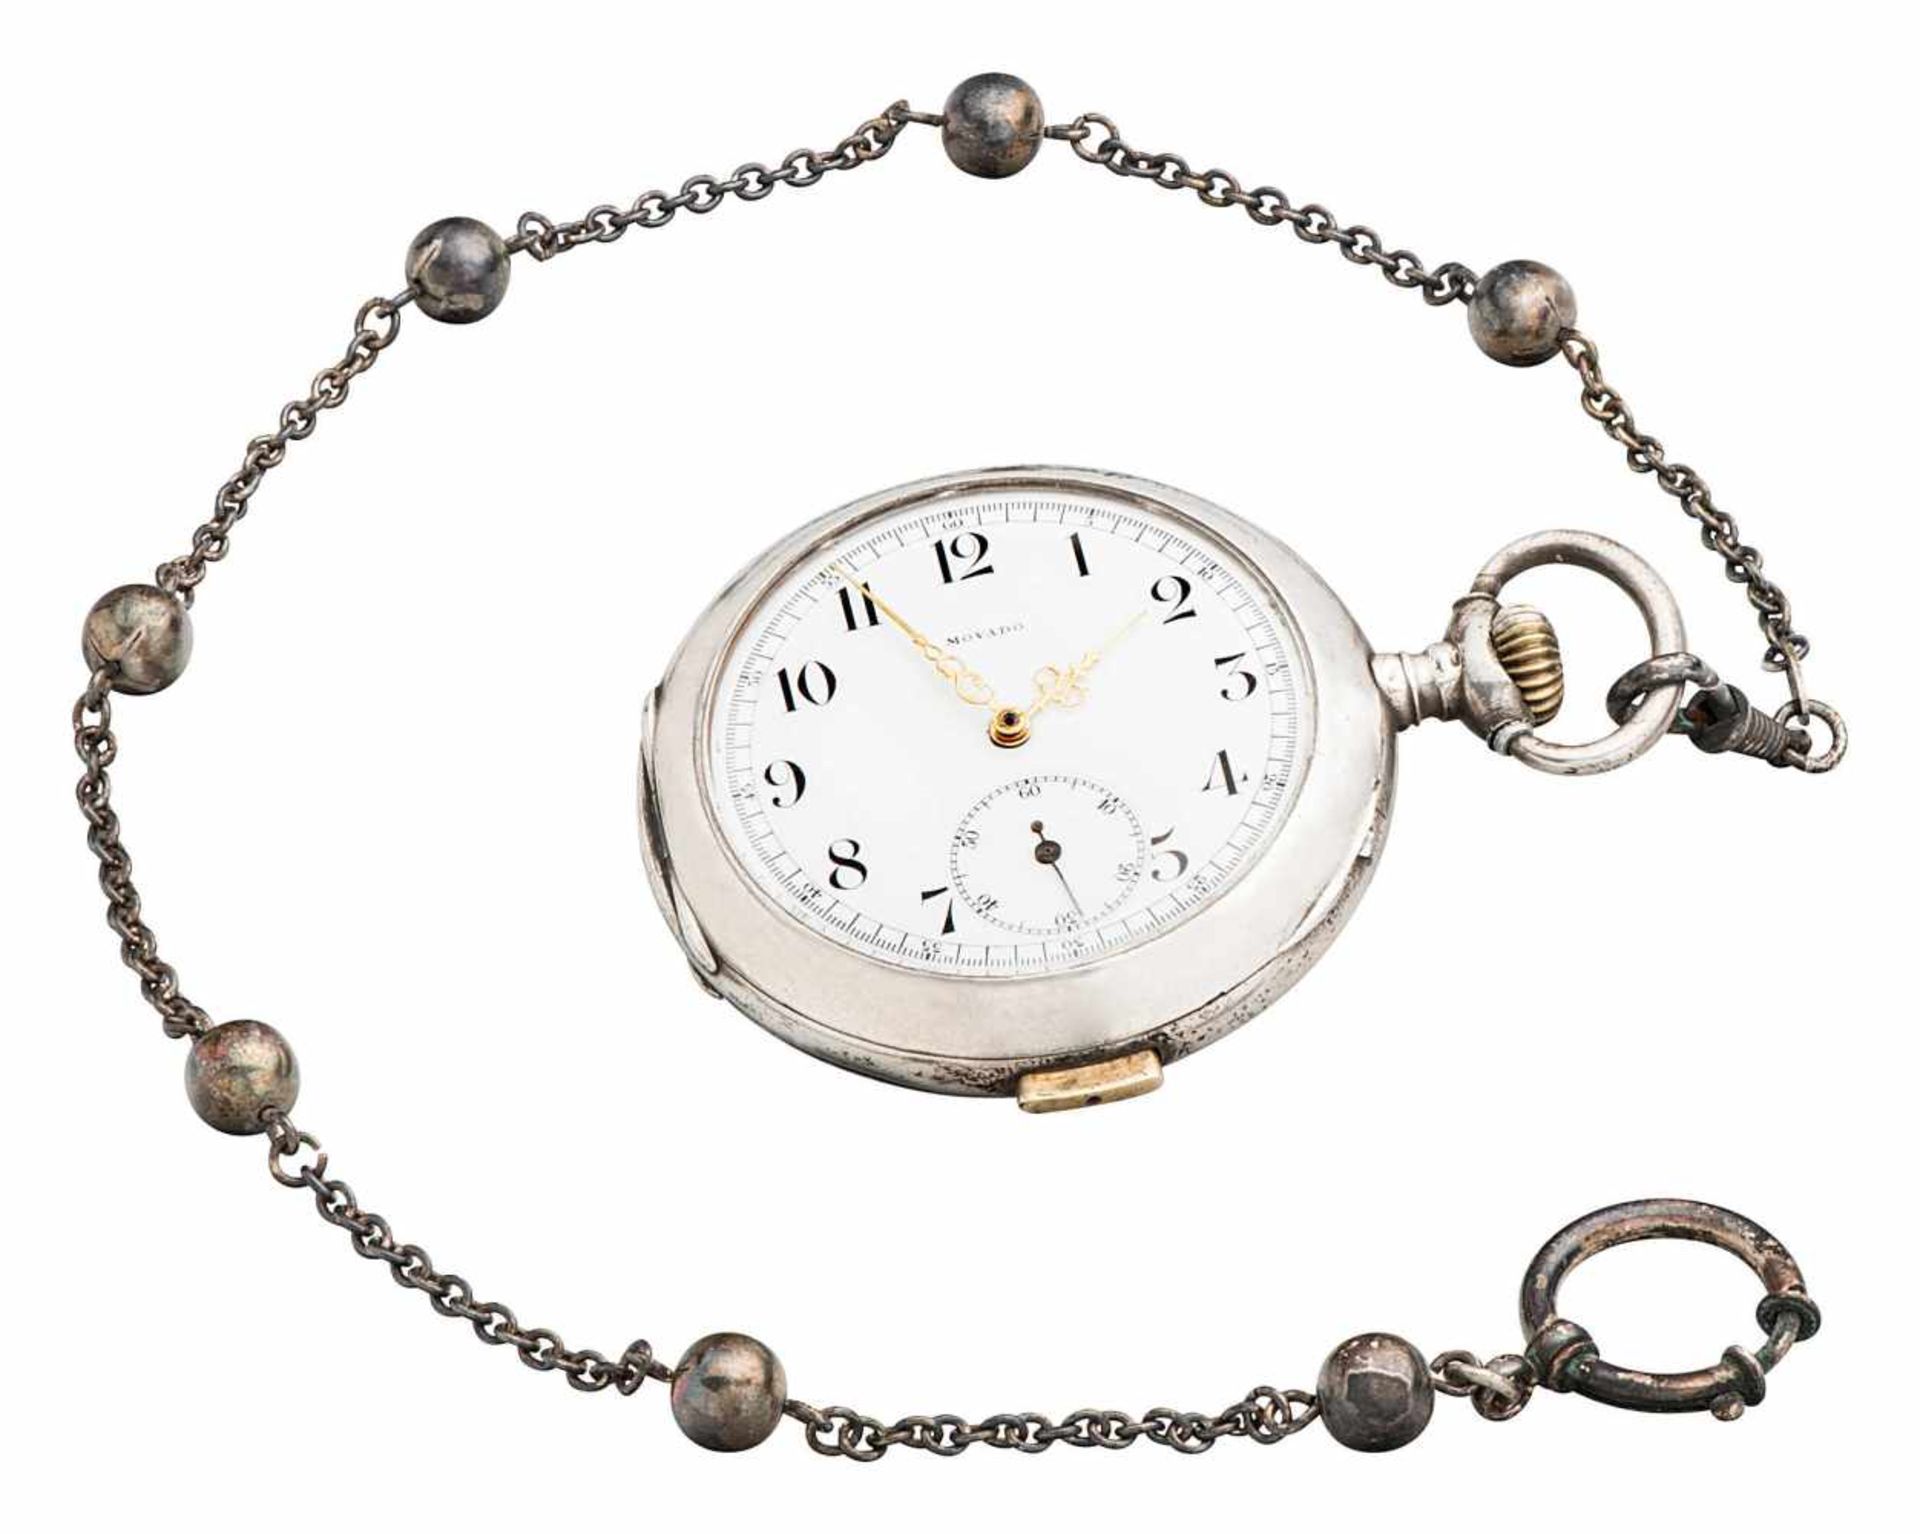 Movado Herrentaschenuhr mit Schlagwerk und KetteLa Chaux-de-Fonds um 1910. Silber 800 (Uhr) und